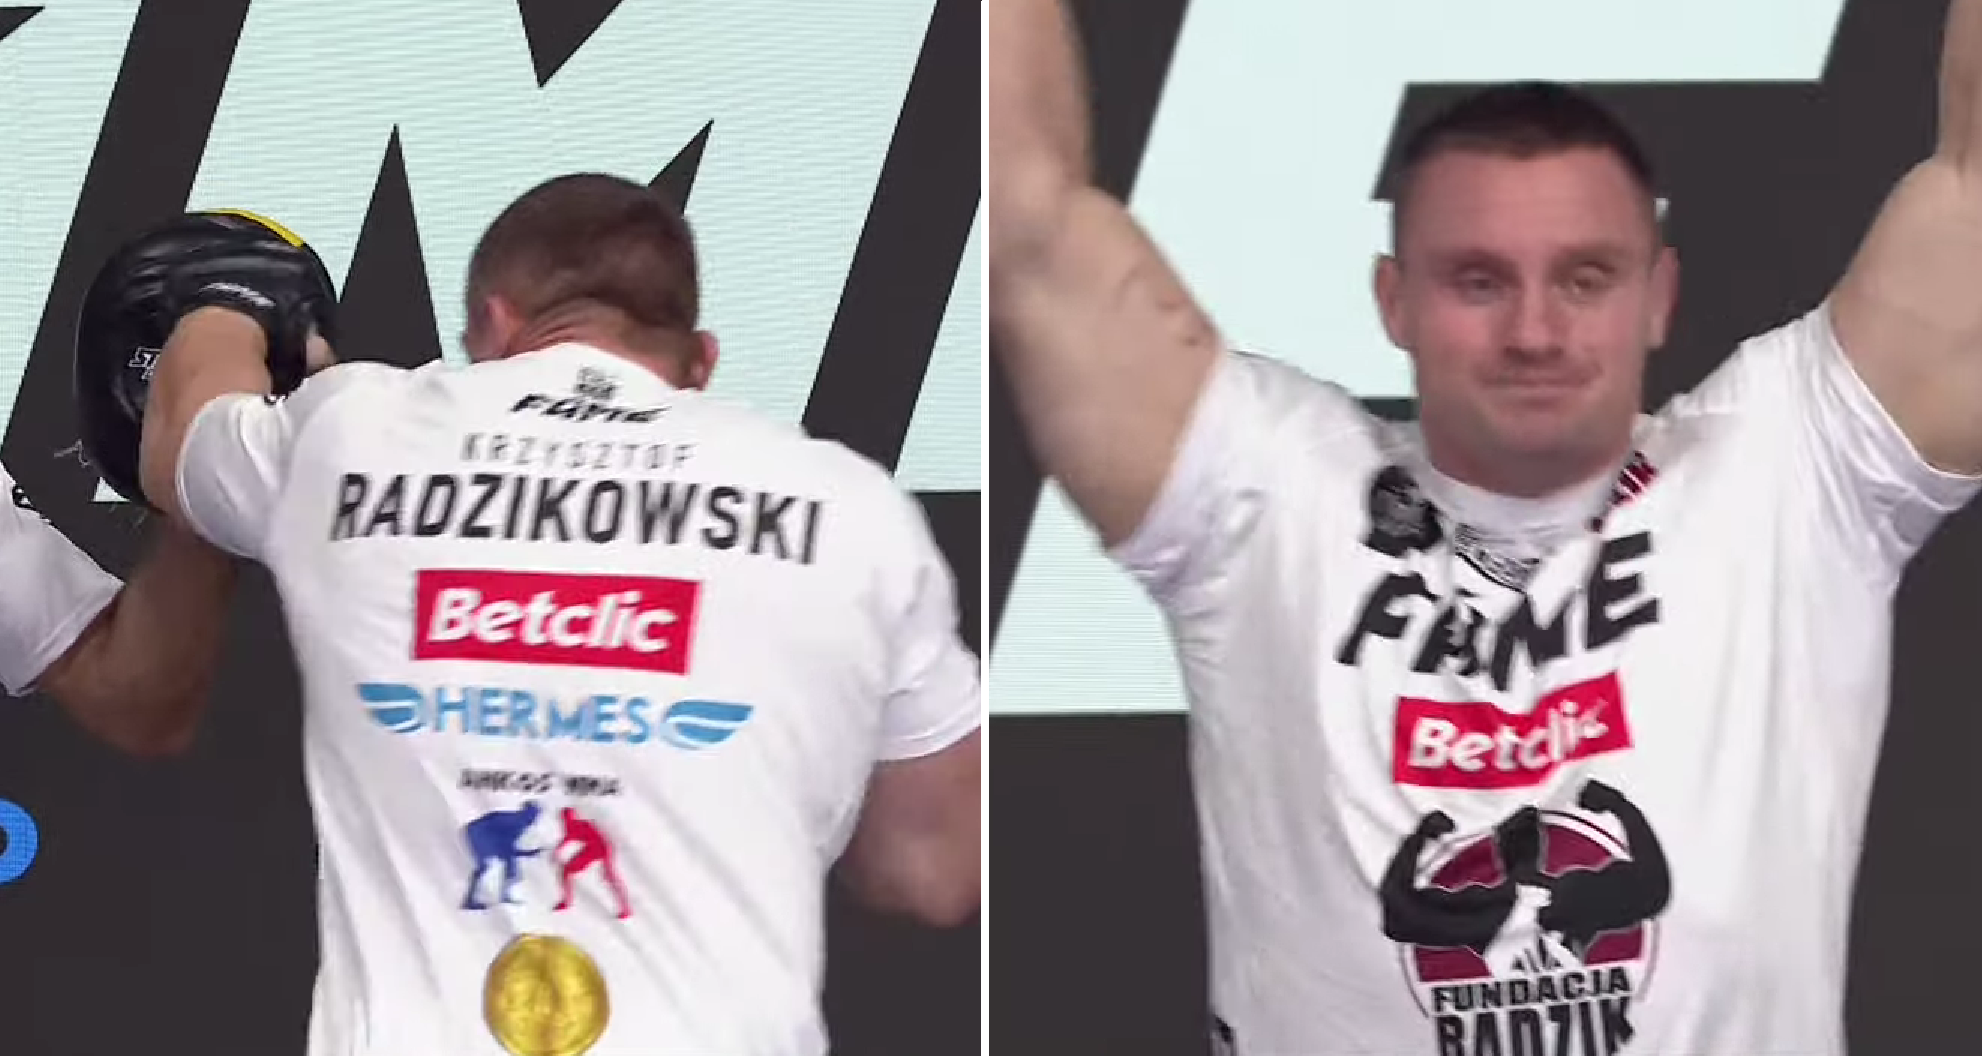 (VIDEO) Tak prezentuje się forma Krzysztofa Radzikowskiego przed debiutem w FAME! Były strongman pokona Piotra Piechowiaka?